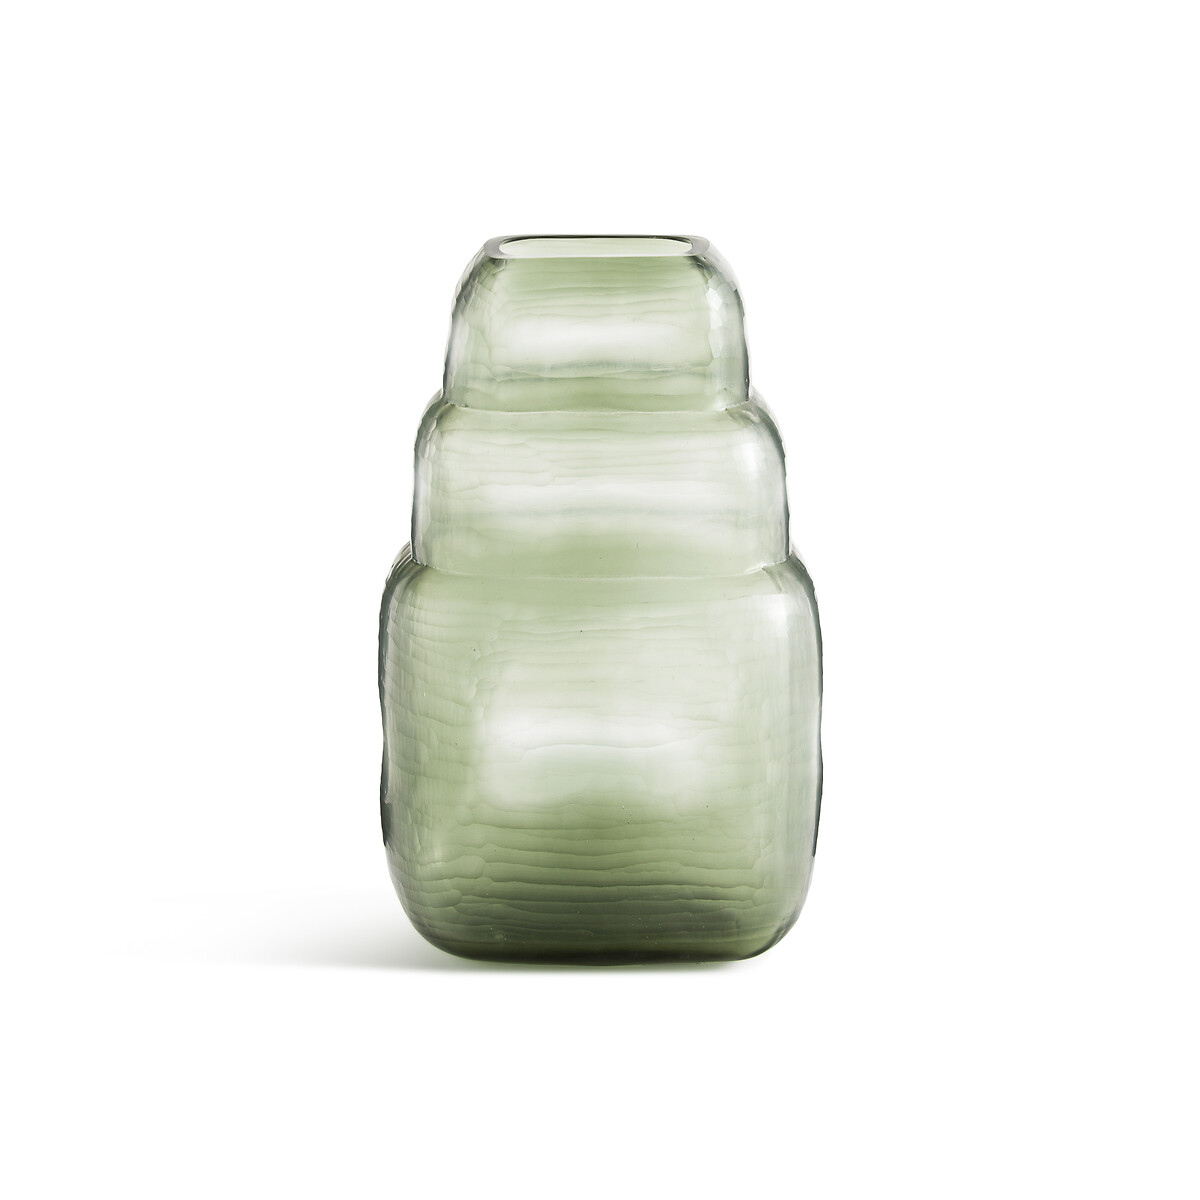 ваза из стекла в25 см arkenvia единый размер зеленый Ваза из матового стекла кракле Parilo единый размер зеленый